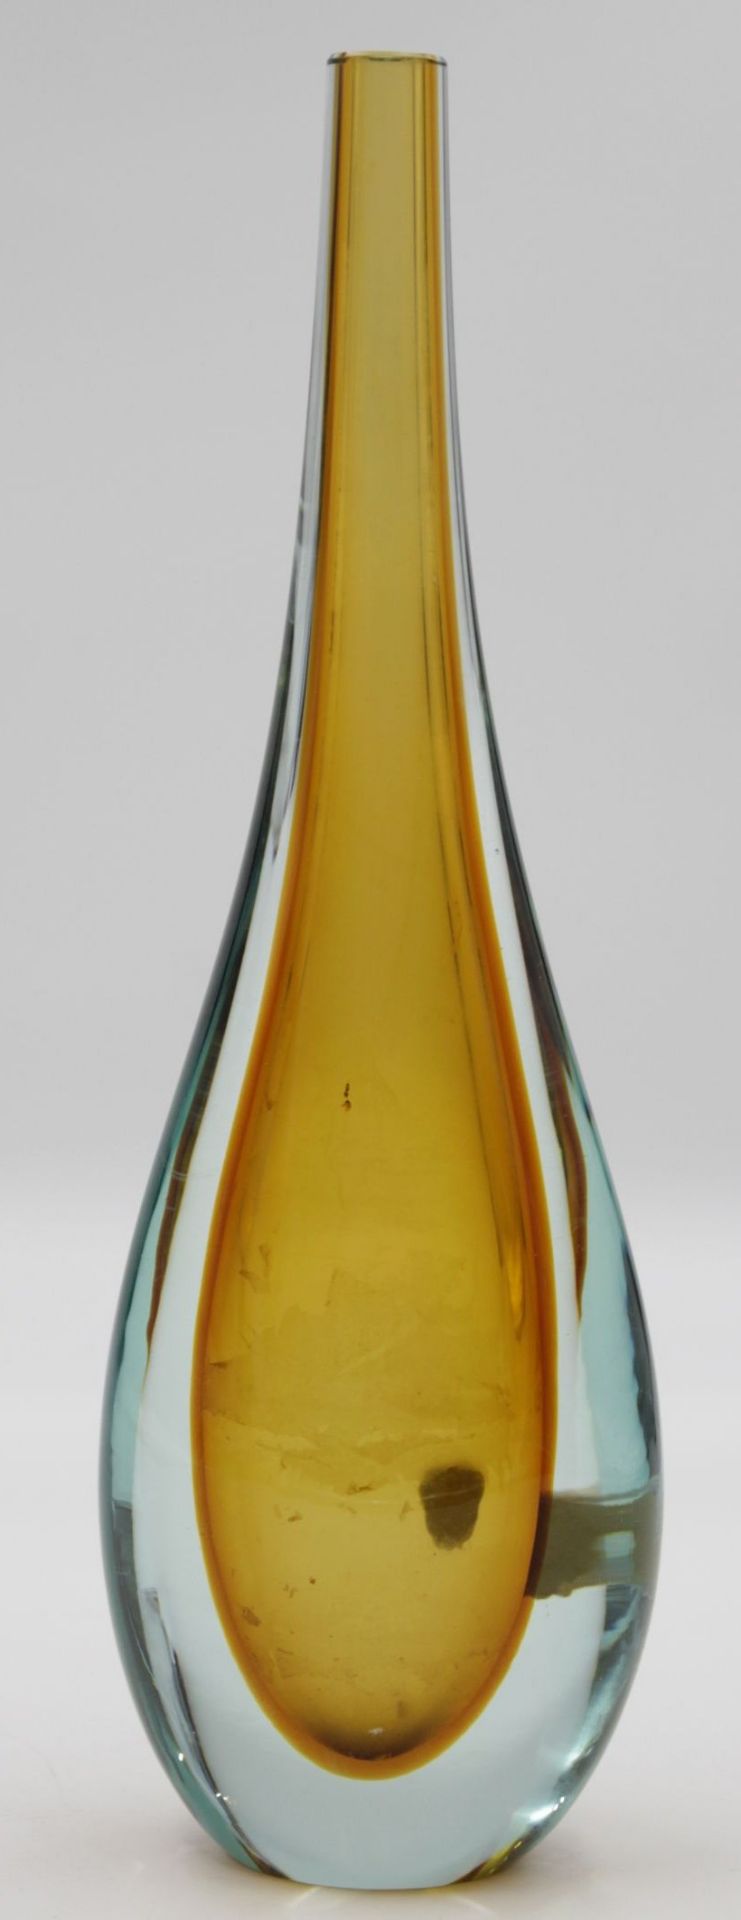 Zweifarbige Flaschenvase von Murano , kleinere Chips an der Öffnung , H-25,8 cm